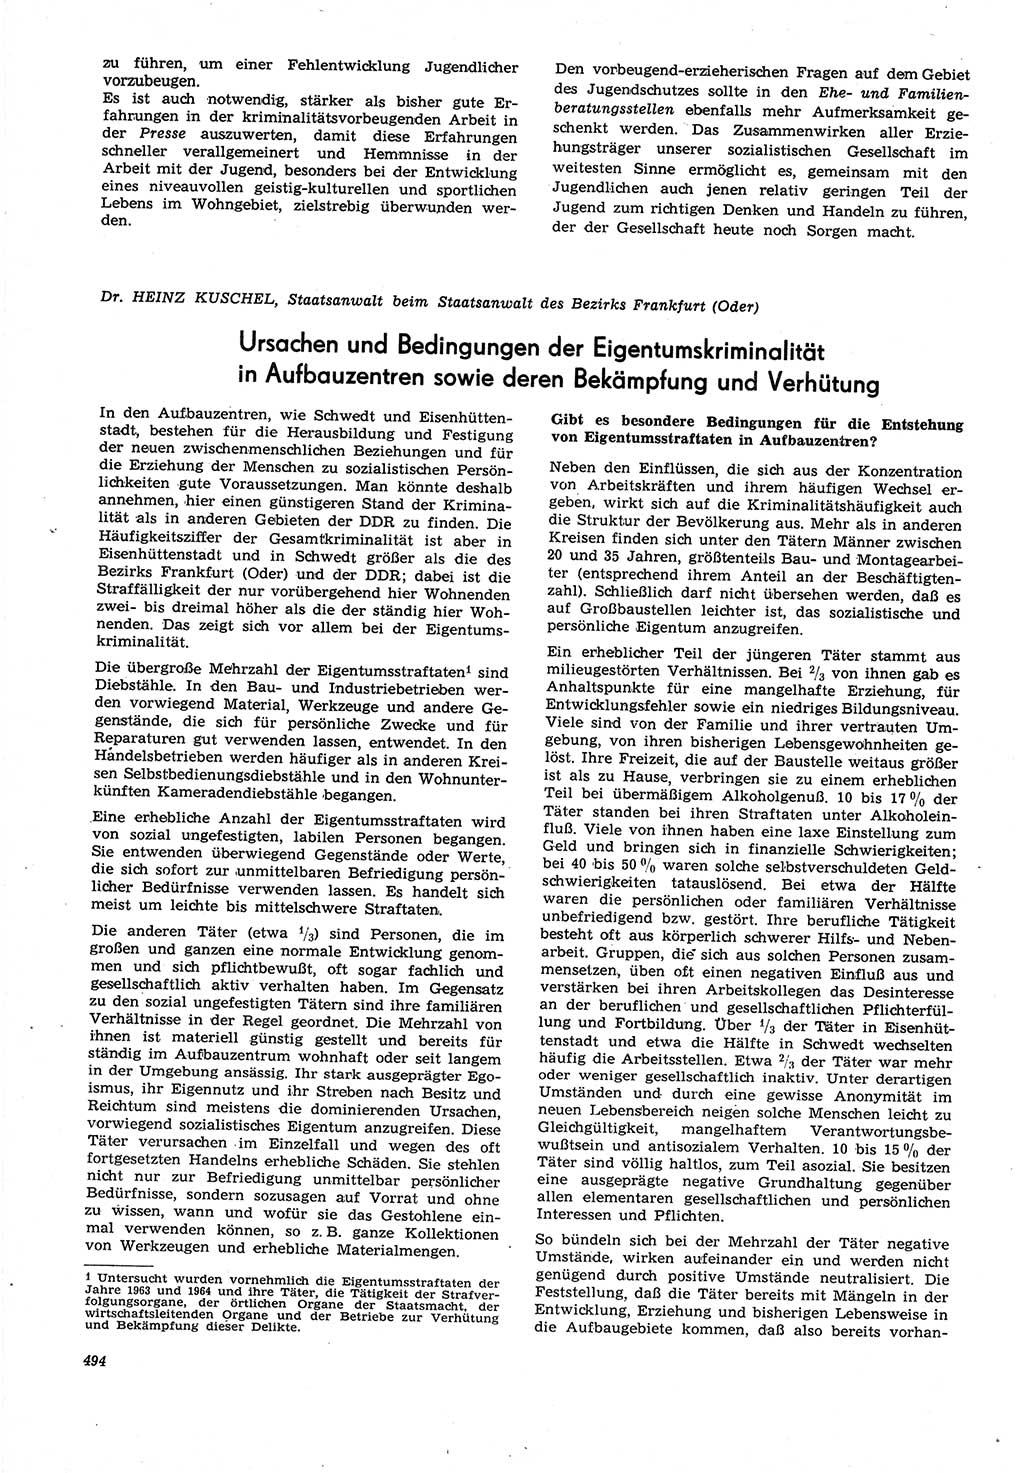 Neue Justiz (NJ), Zeitschrift für Recht und Rechtswissenschaft [Deutsche Demokratische Republik (DDR)], 21. Jahrgang 1967, Seite 494 (NJ DDR 1967, S. 494)